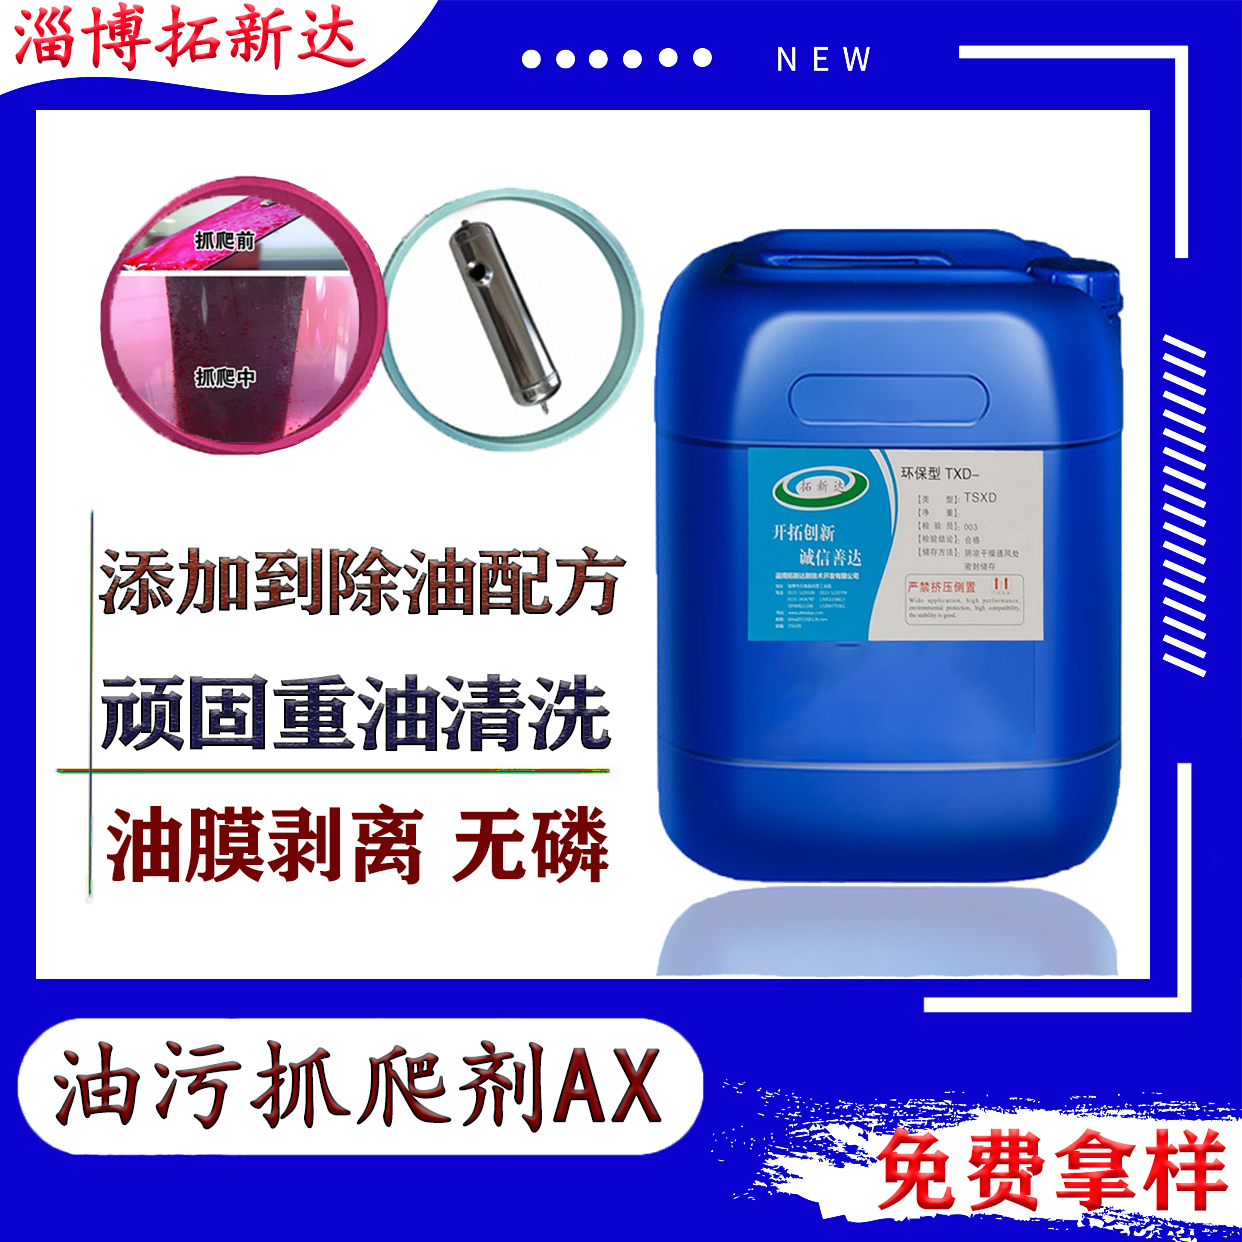 油污抓爬剂AX​清洗提速剂、清洗增速剂、提高除油速度的添加剂